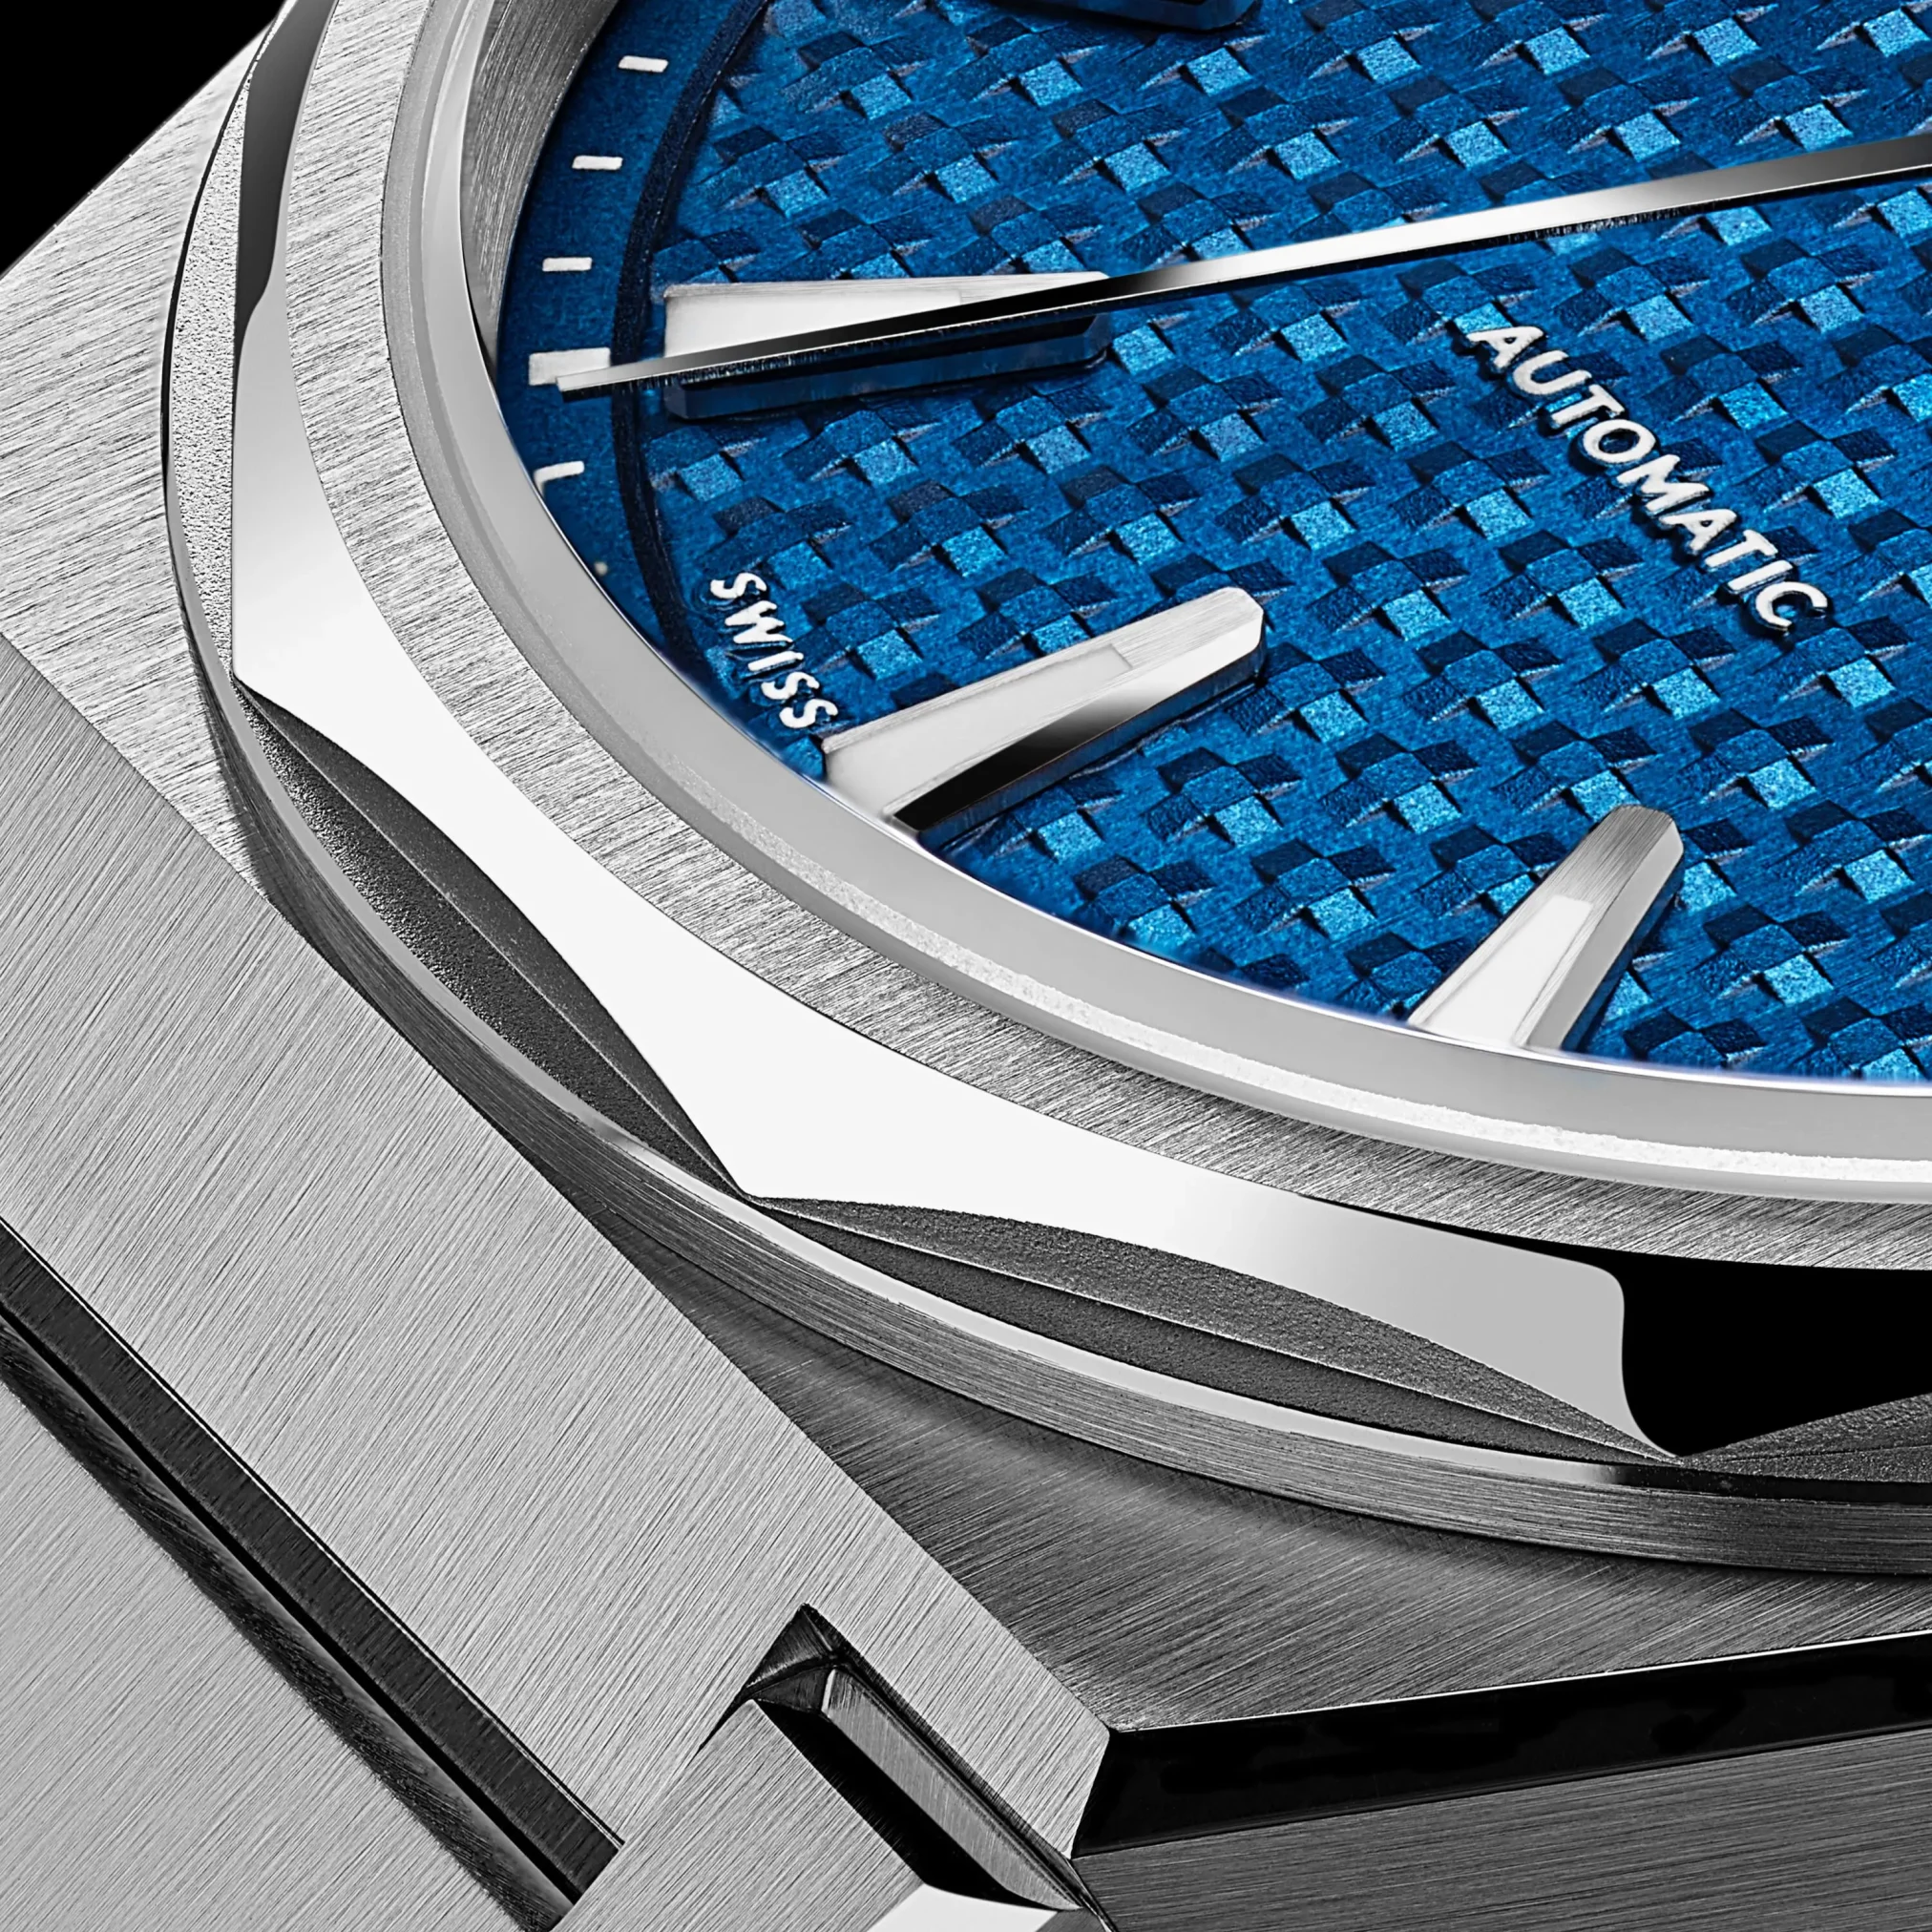 Đồng hồ Christopher Ward C12 The Twelve Nordic Blue 36mm C12-36A3H1-S00B0-B0 mặt số màu xanh. Thiết kế lộ cơ. Dây đeo bằng thép. Thân vỏ bằng thép.